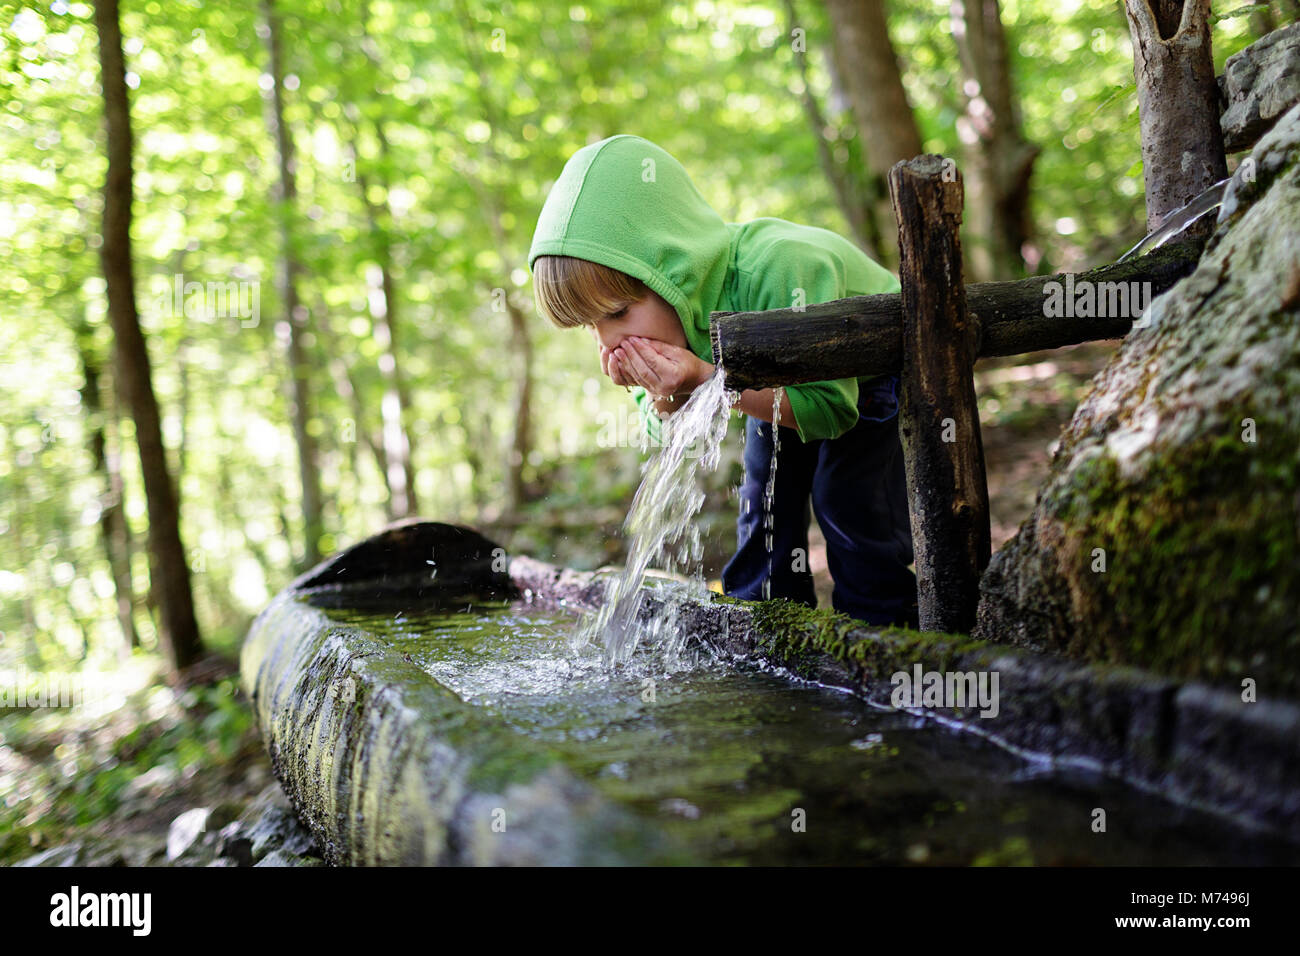 Jeune garçon blond l'eau potable de creux des mains de l'auge rustique dans une forêt Banque D'Images